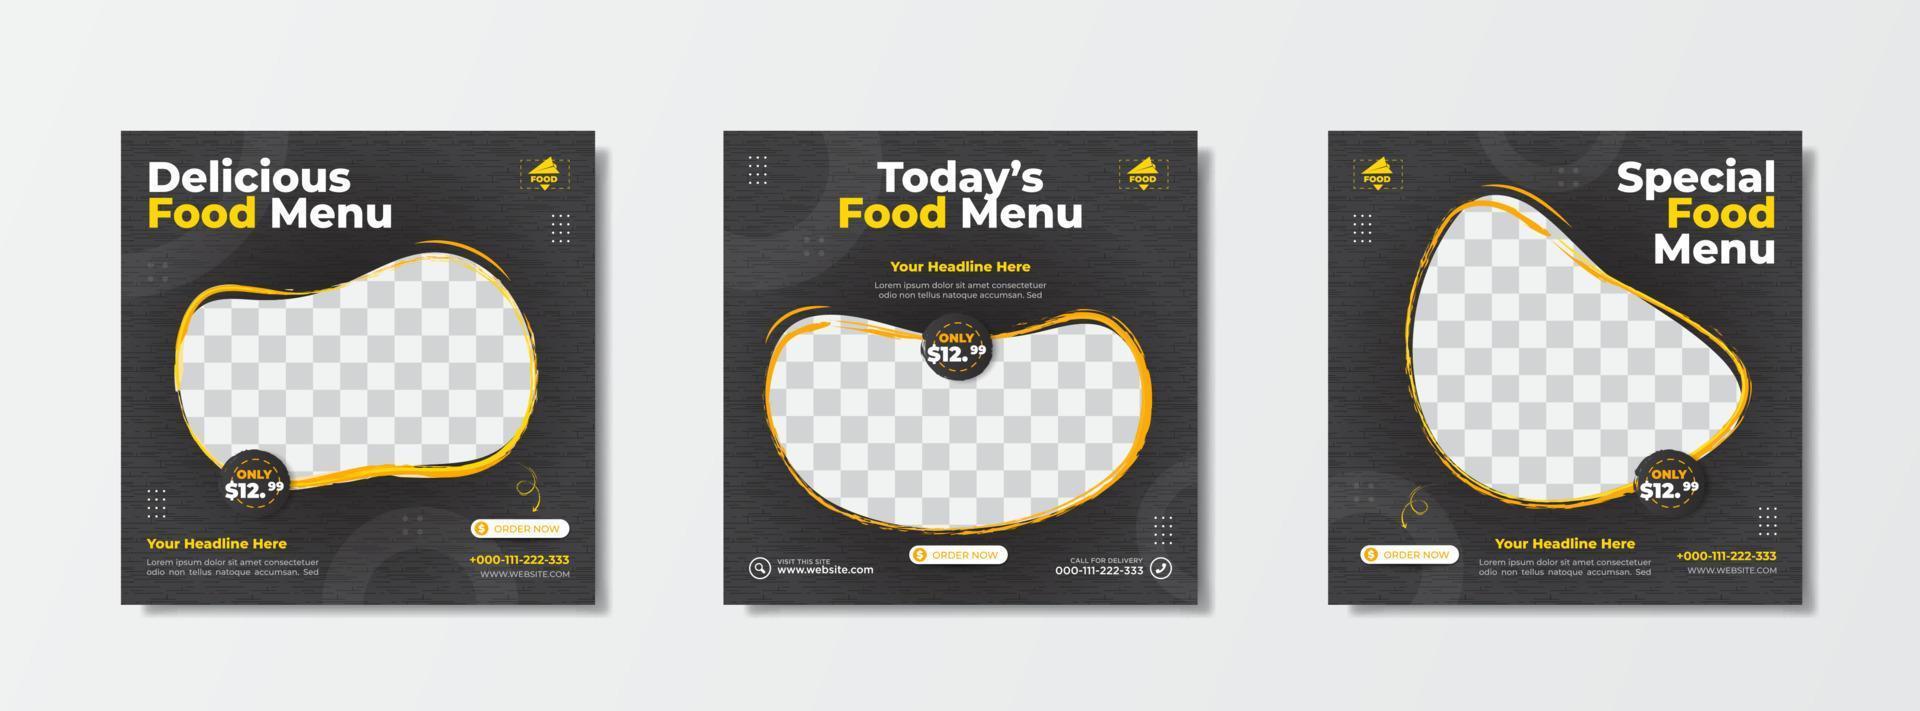 voedselmenu promotie verkoopsjabloon met donkere achtergrond voor post op sociale media vector